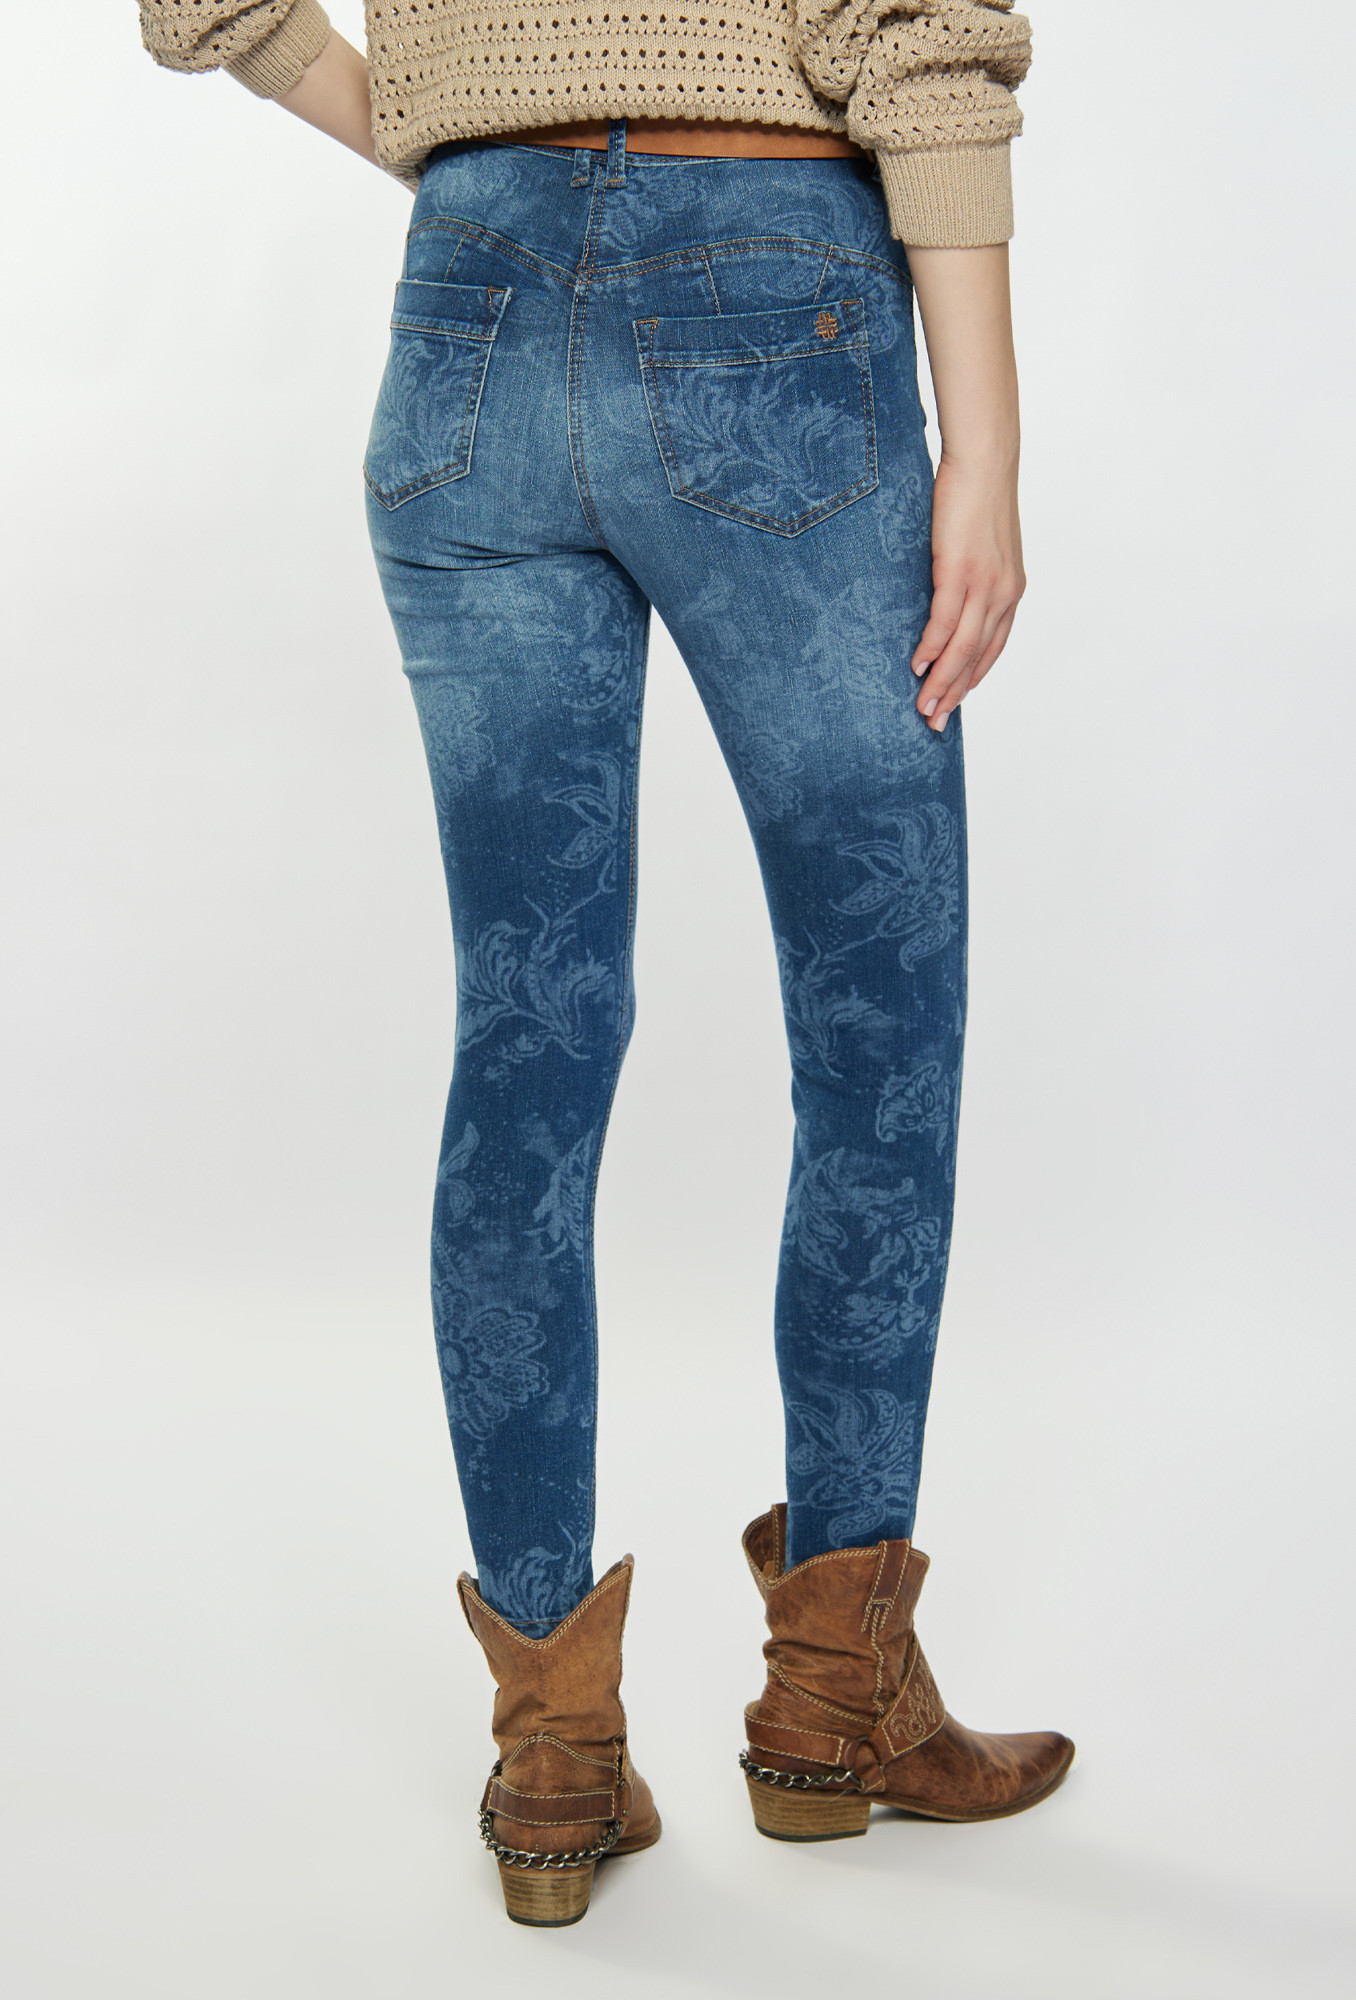 Monnari Jeans Vzorované džíny modré 38